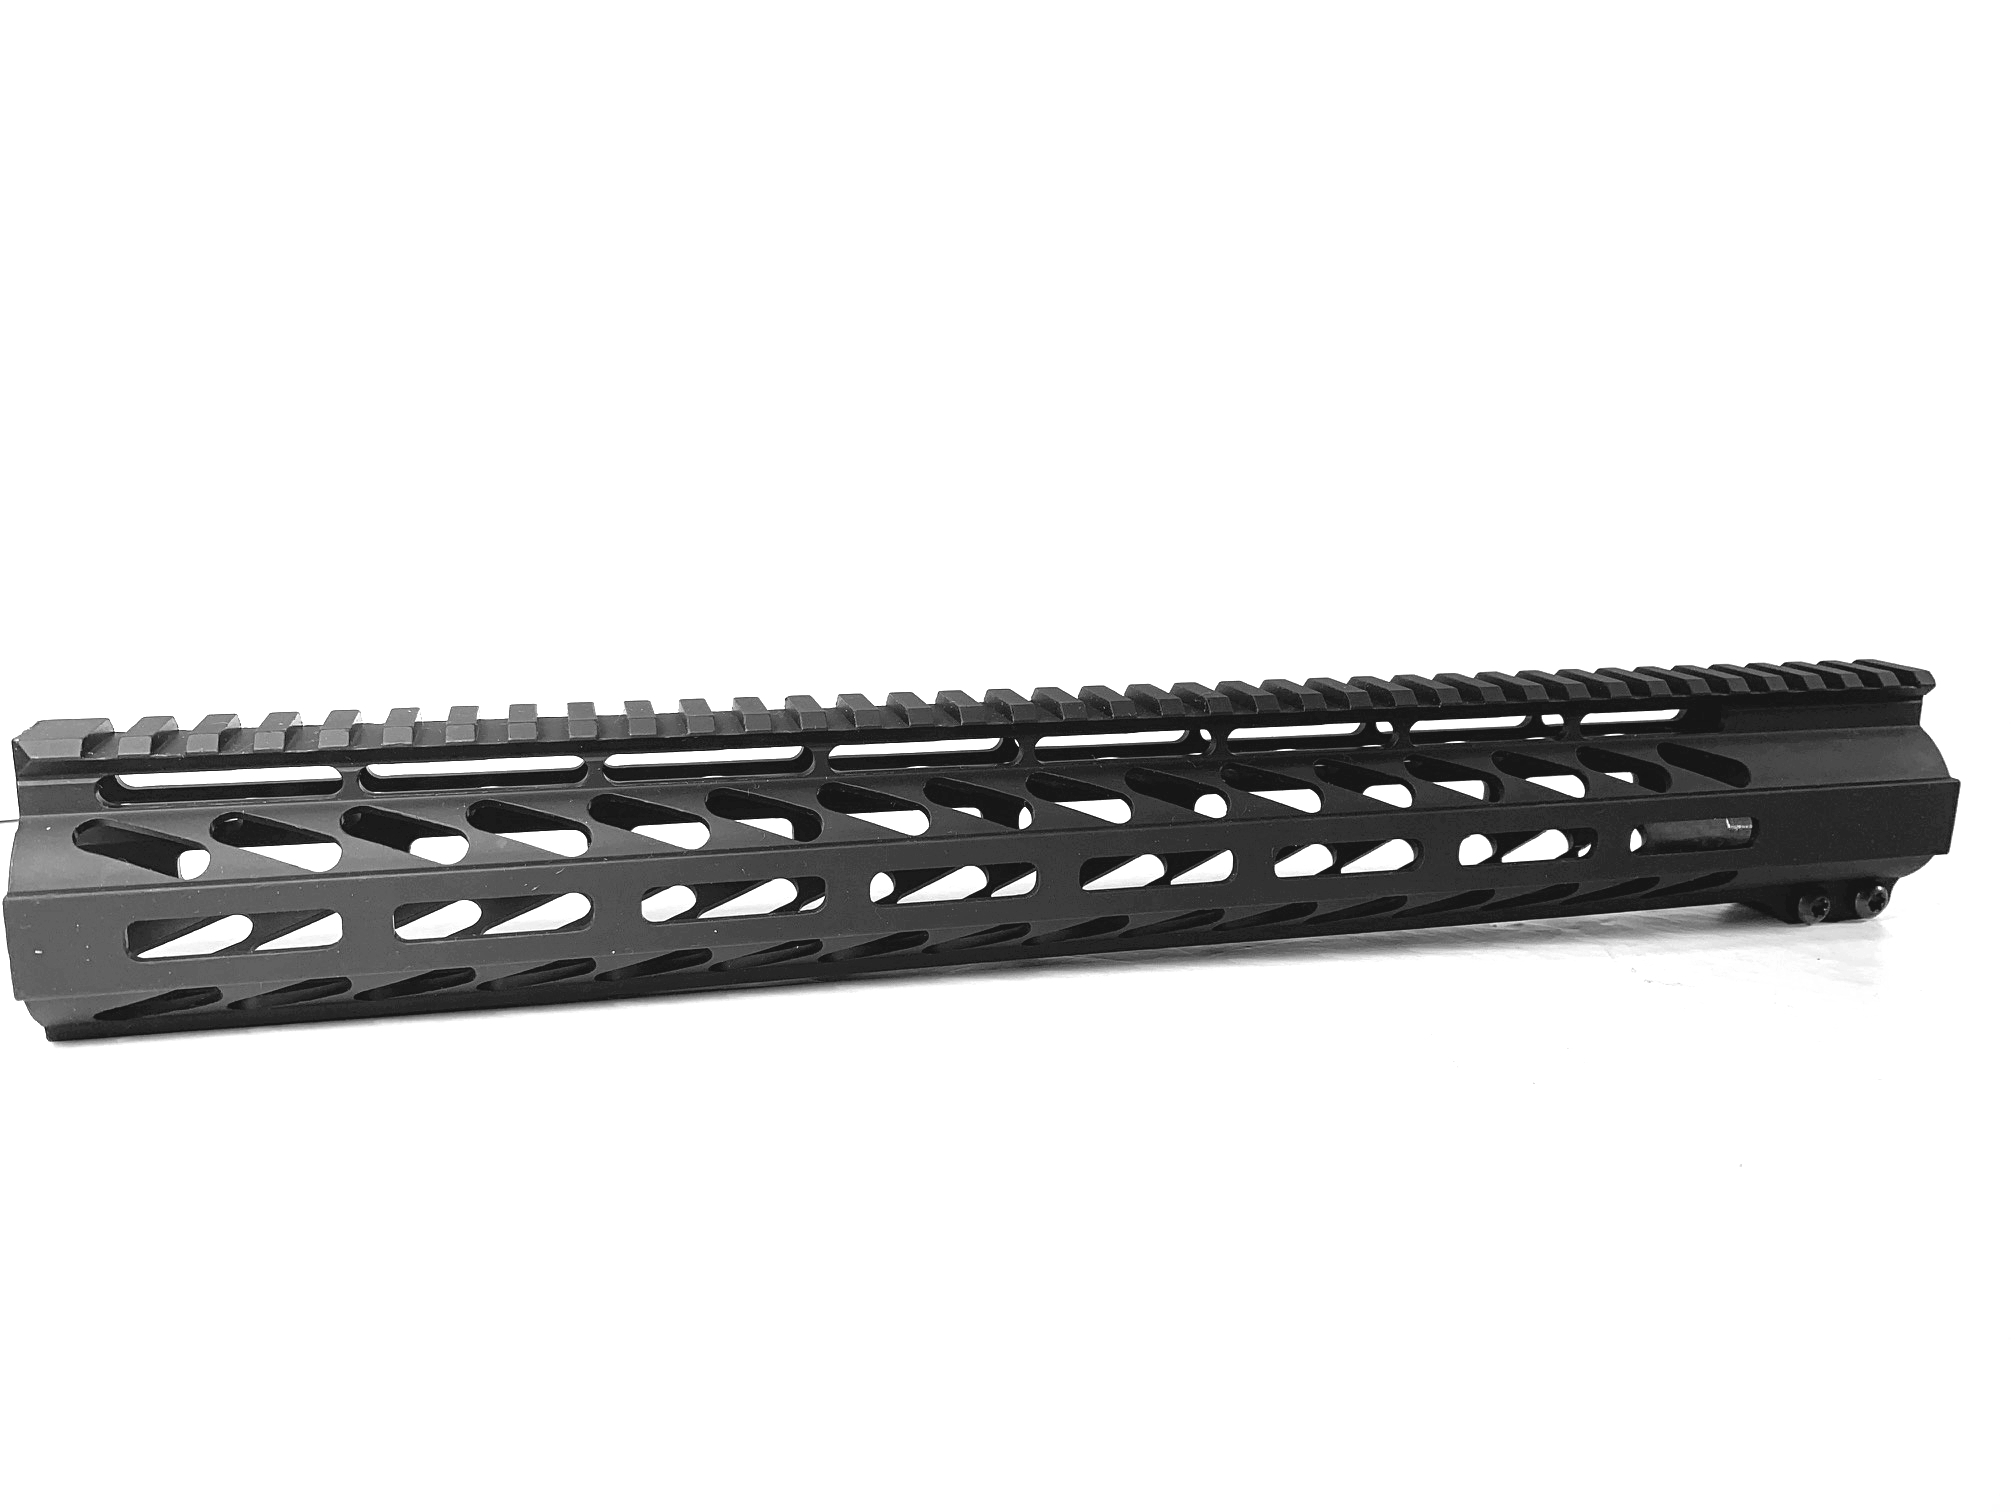 Ghost Firearms 15 inch M-LOK Slim Profile Free Float Rail